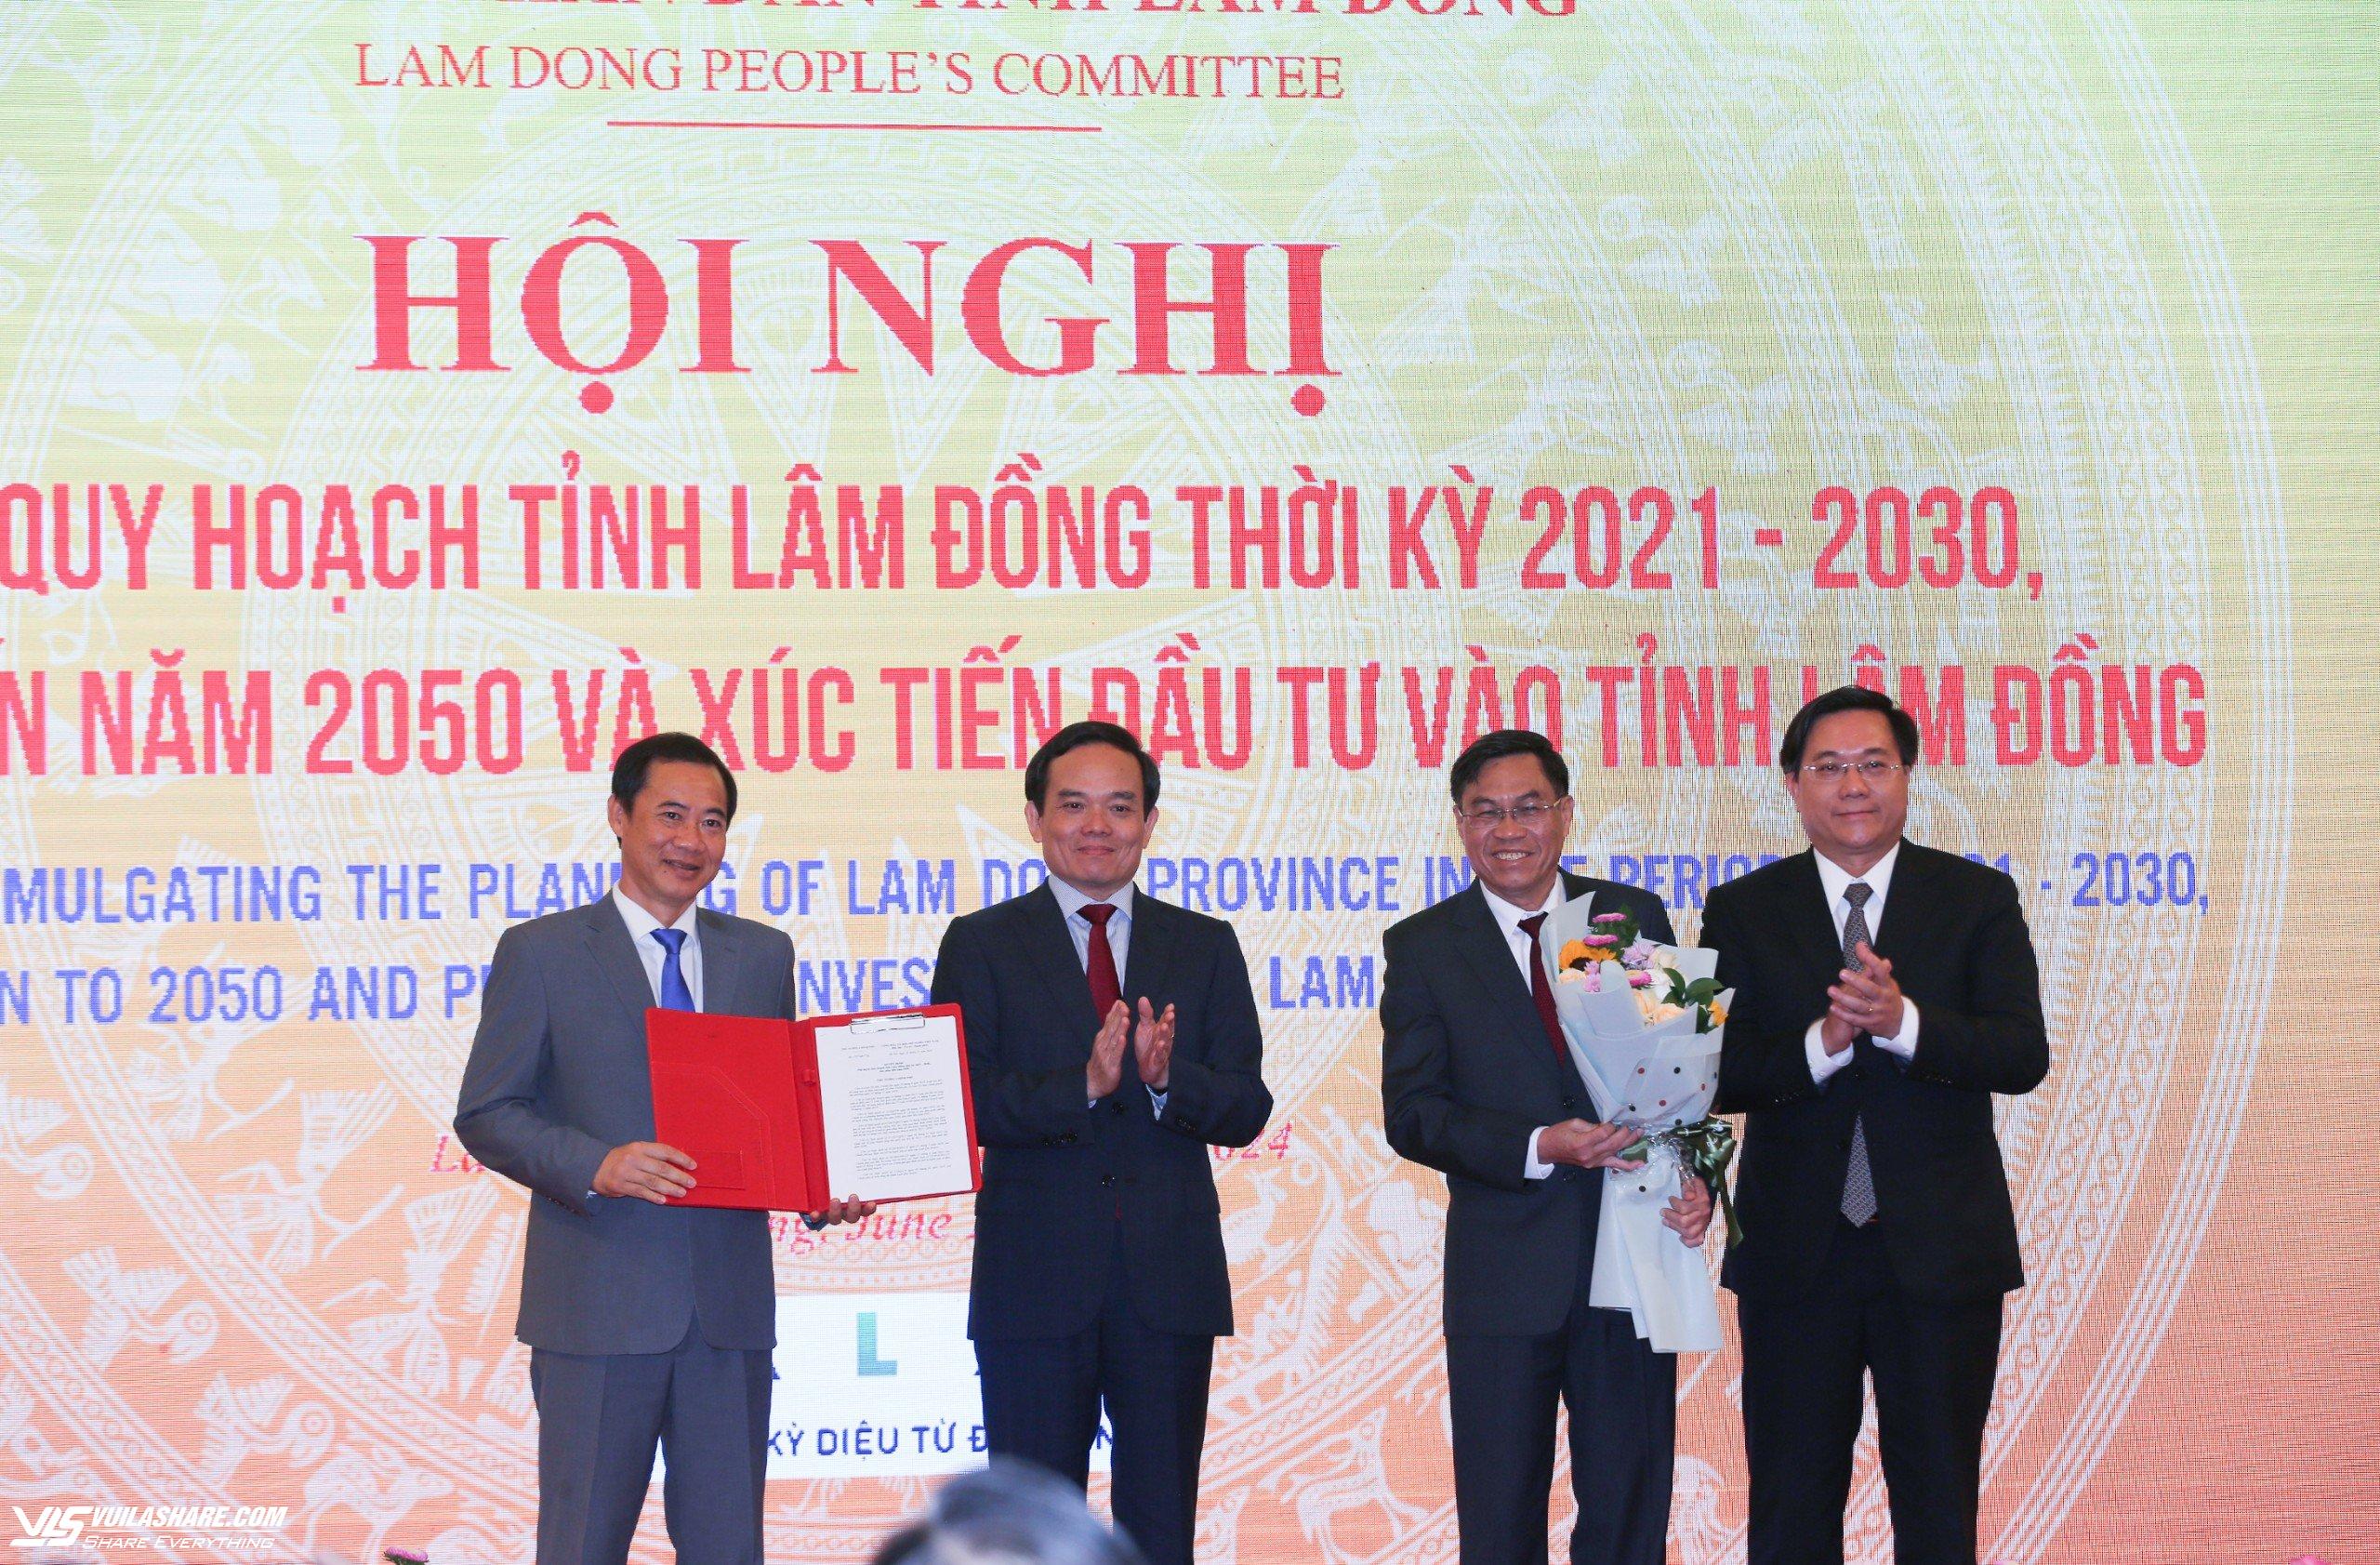 Phó thủ tướng: Yếu tố văn hóa có giá trị cốt lõi cho sự phát triển của Lâm Đồng- Ảnh 1.